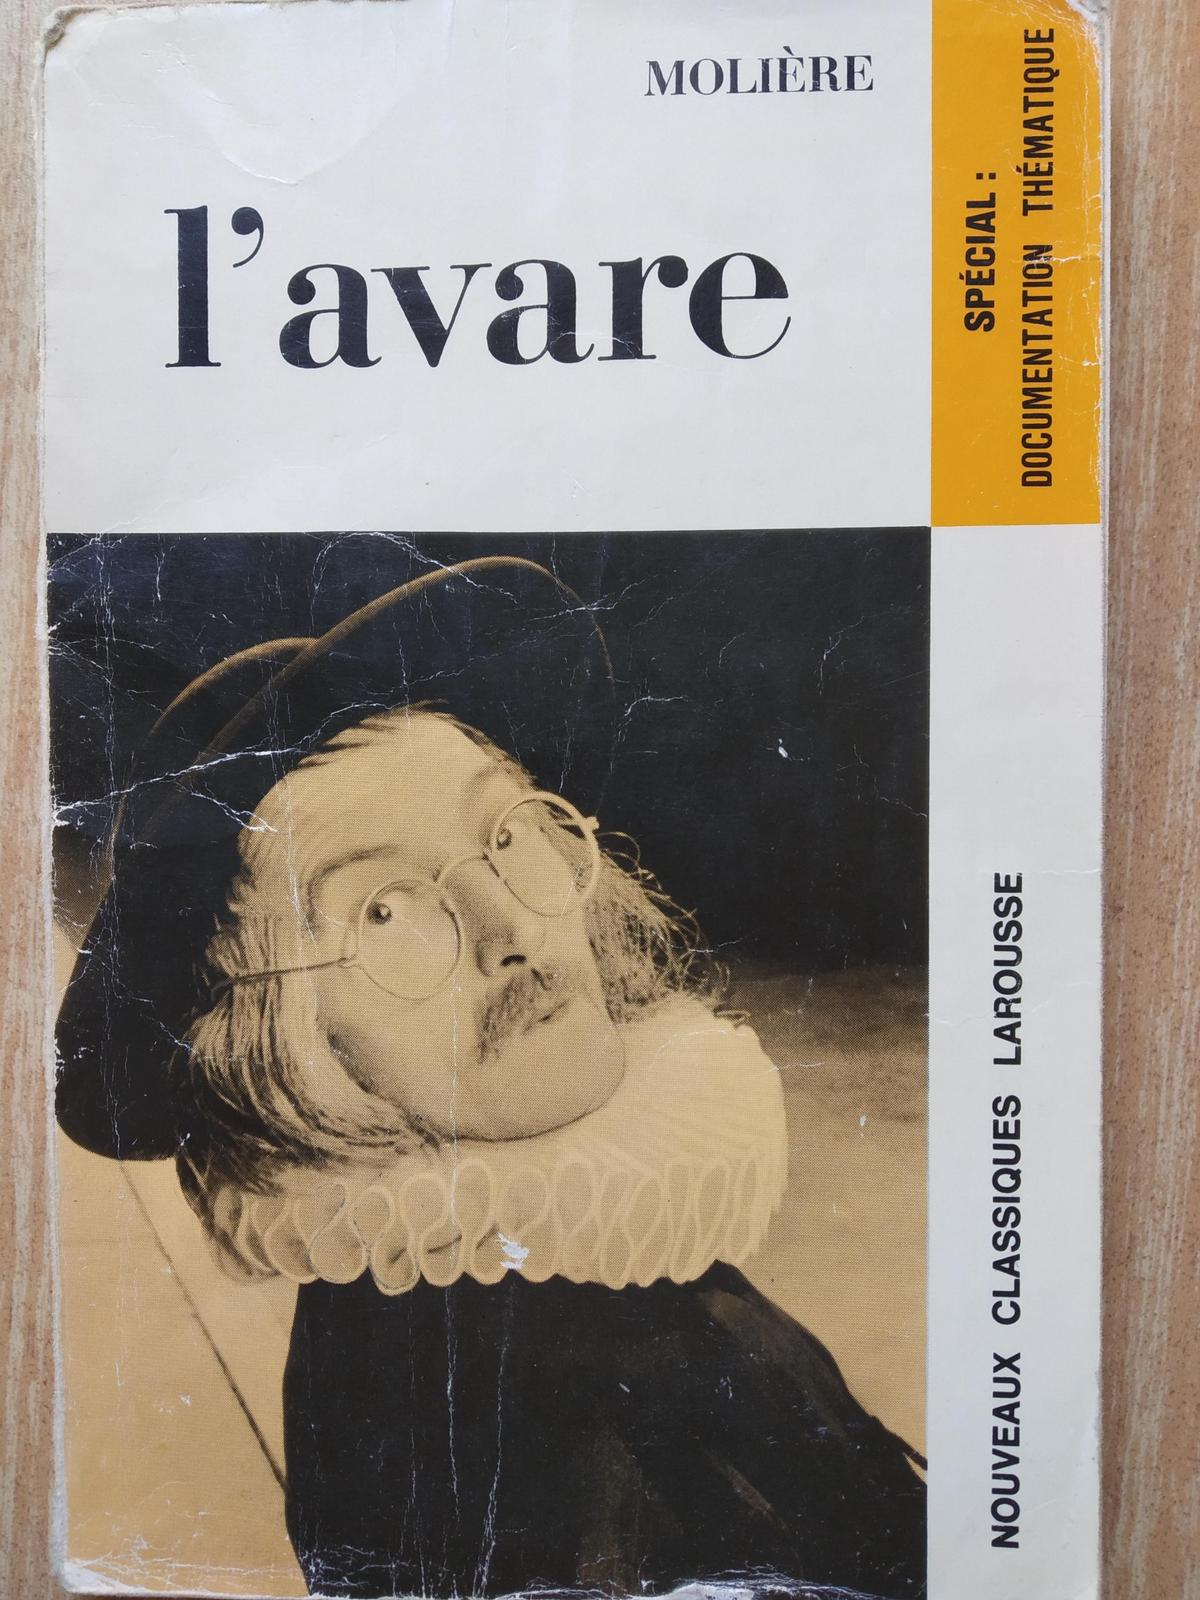 Molière: L'Avare (French language, 1971)